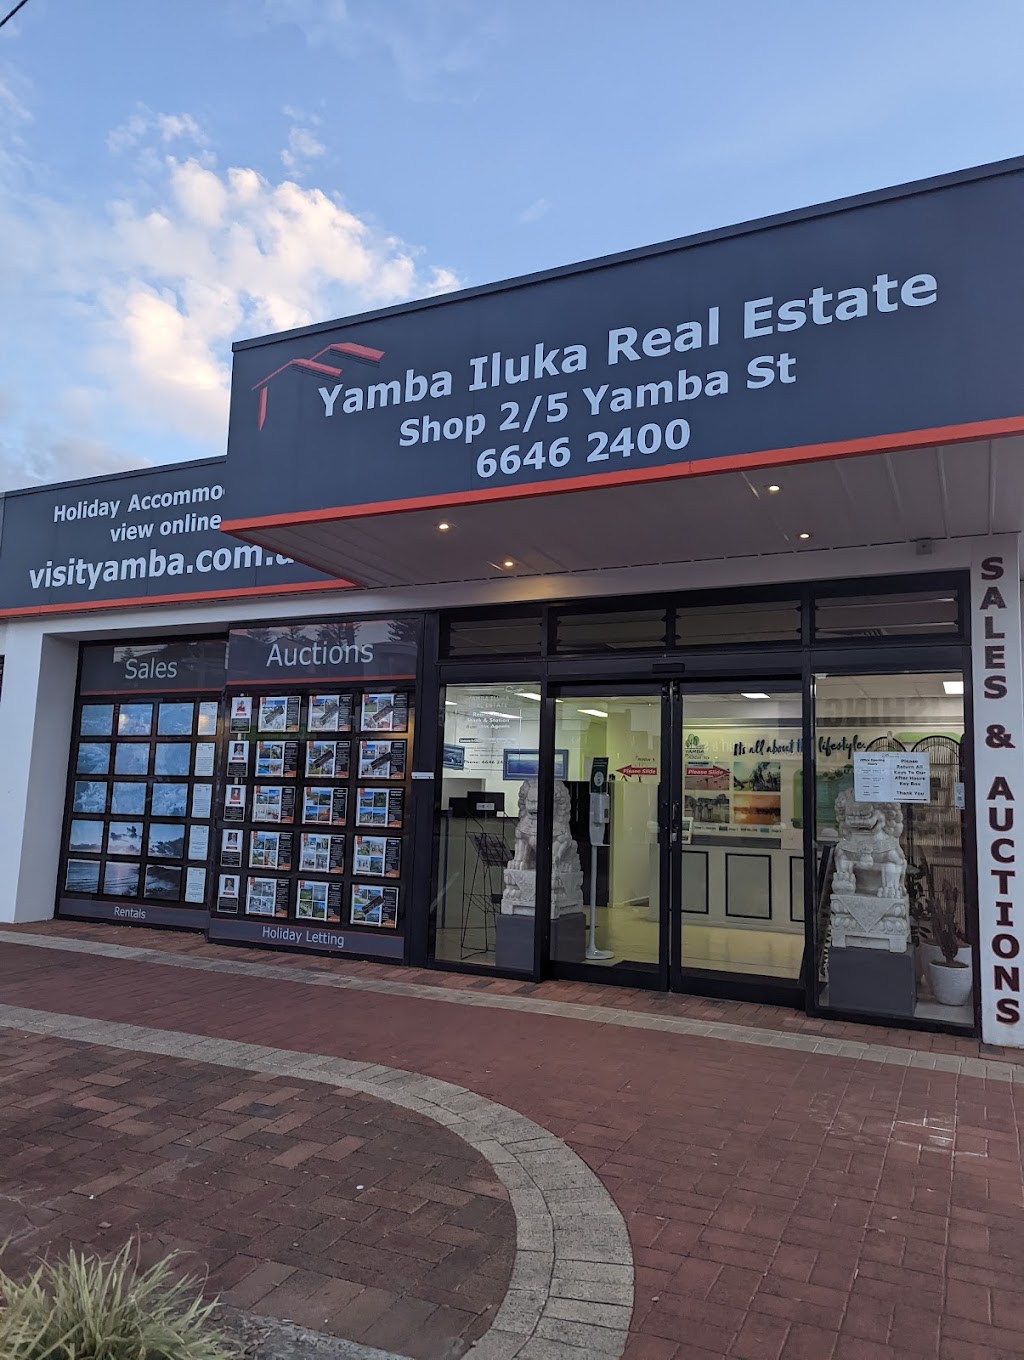 Elders Real Estate Yamba | real estate agency | 2/5 Yamba St, Yamba NSW 2464, Australia | 0266462400 OR +61 2 6646 2400